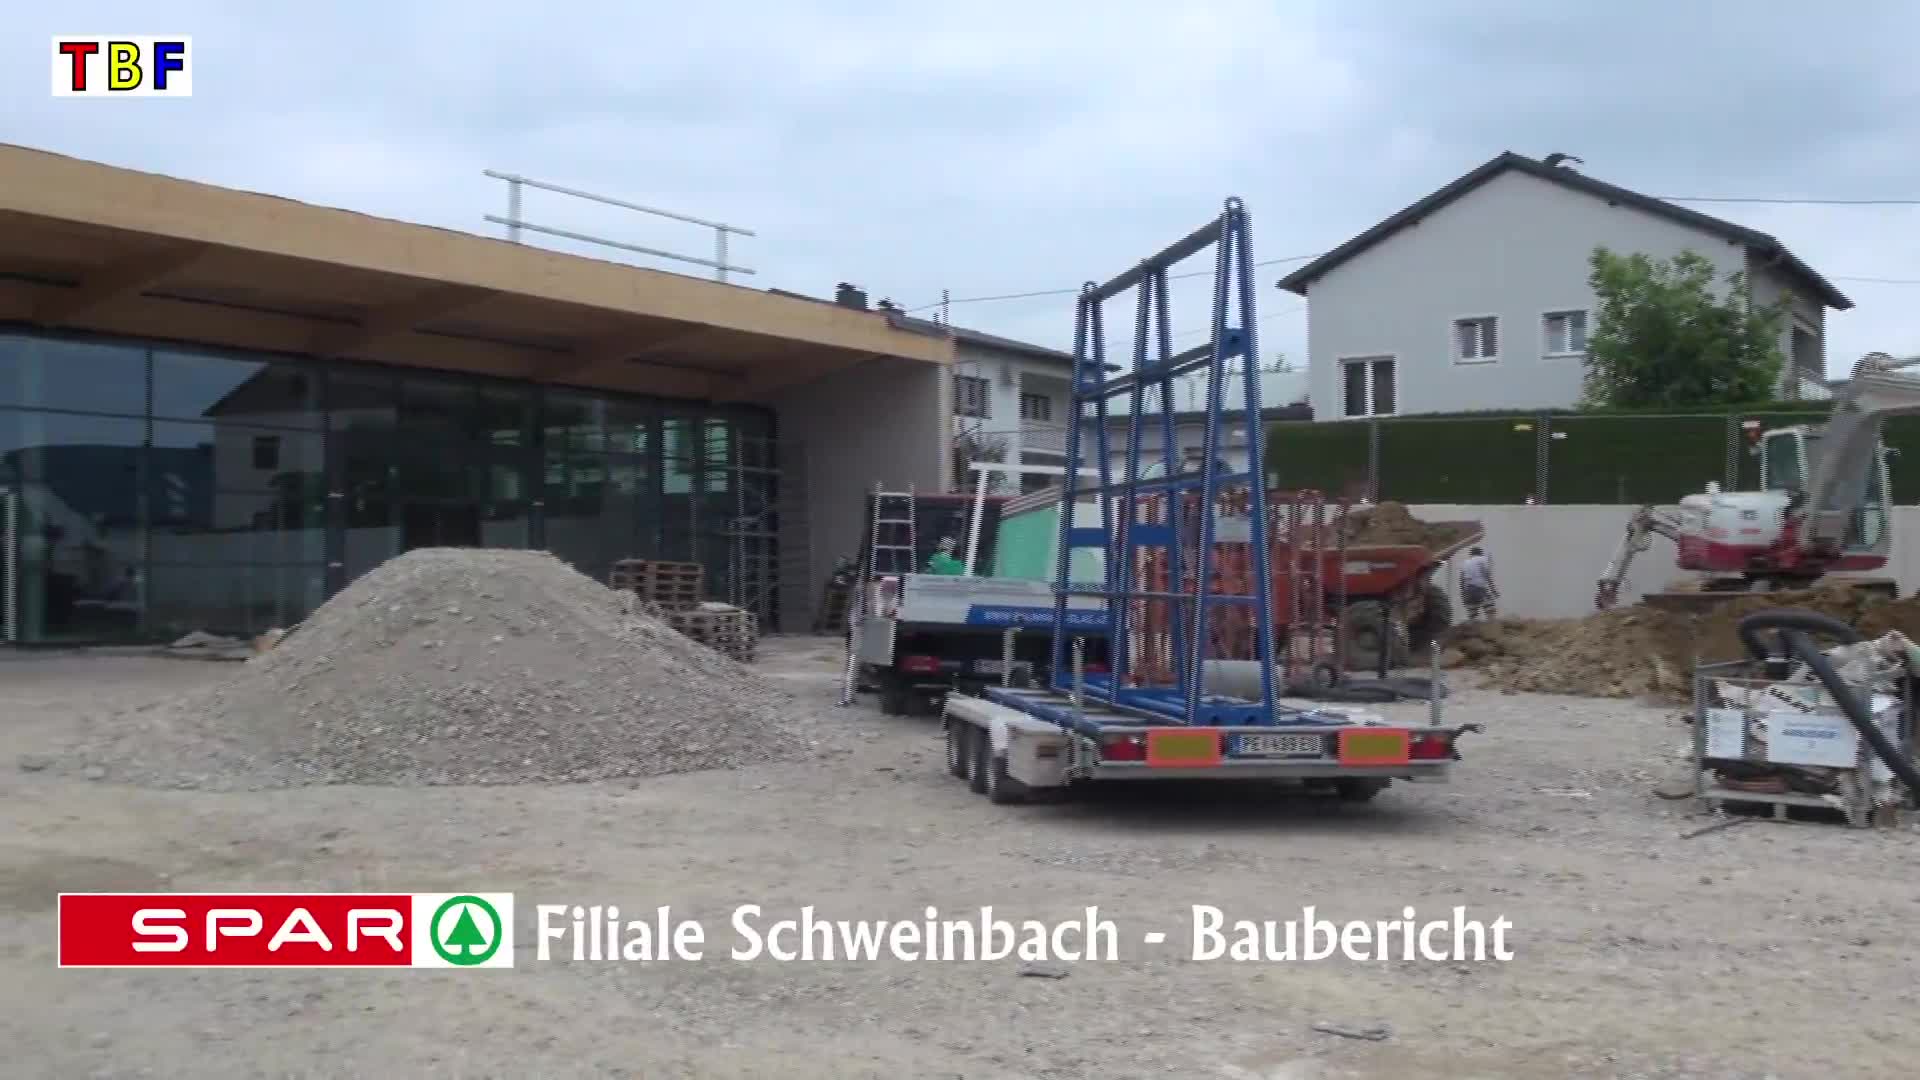 SPAR Filiale Schweinbach - Baubericht